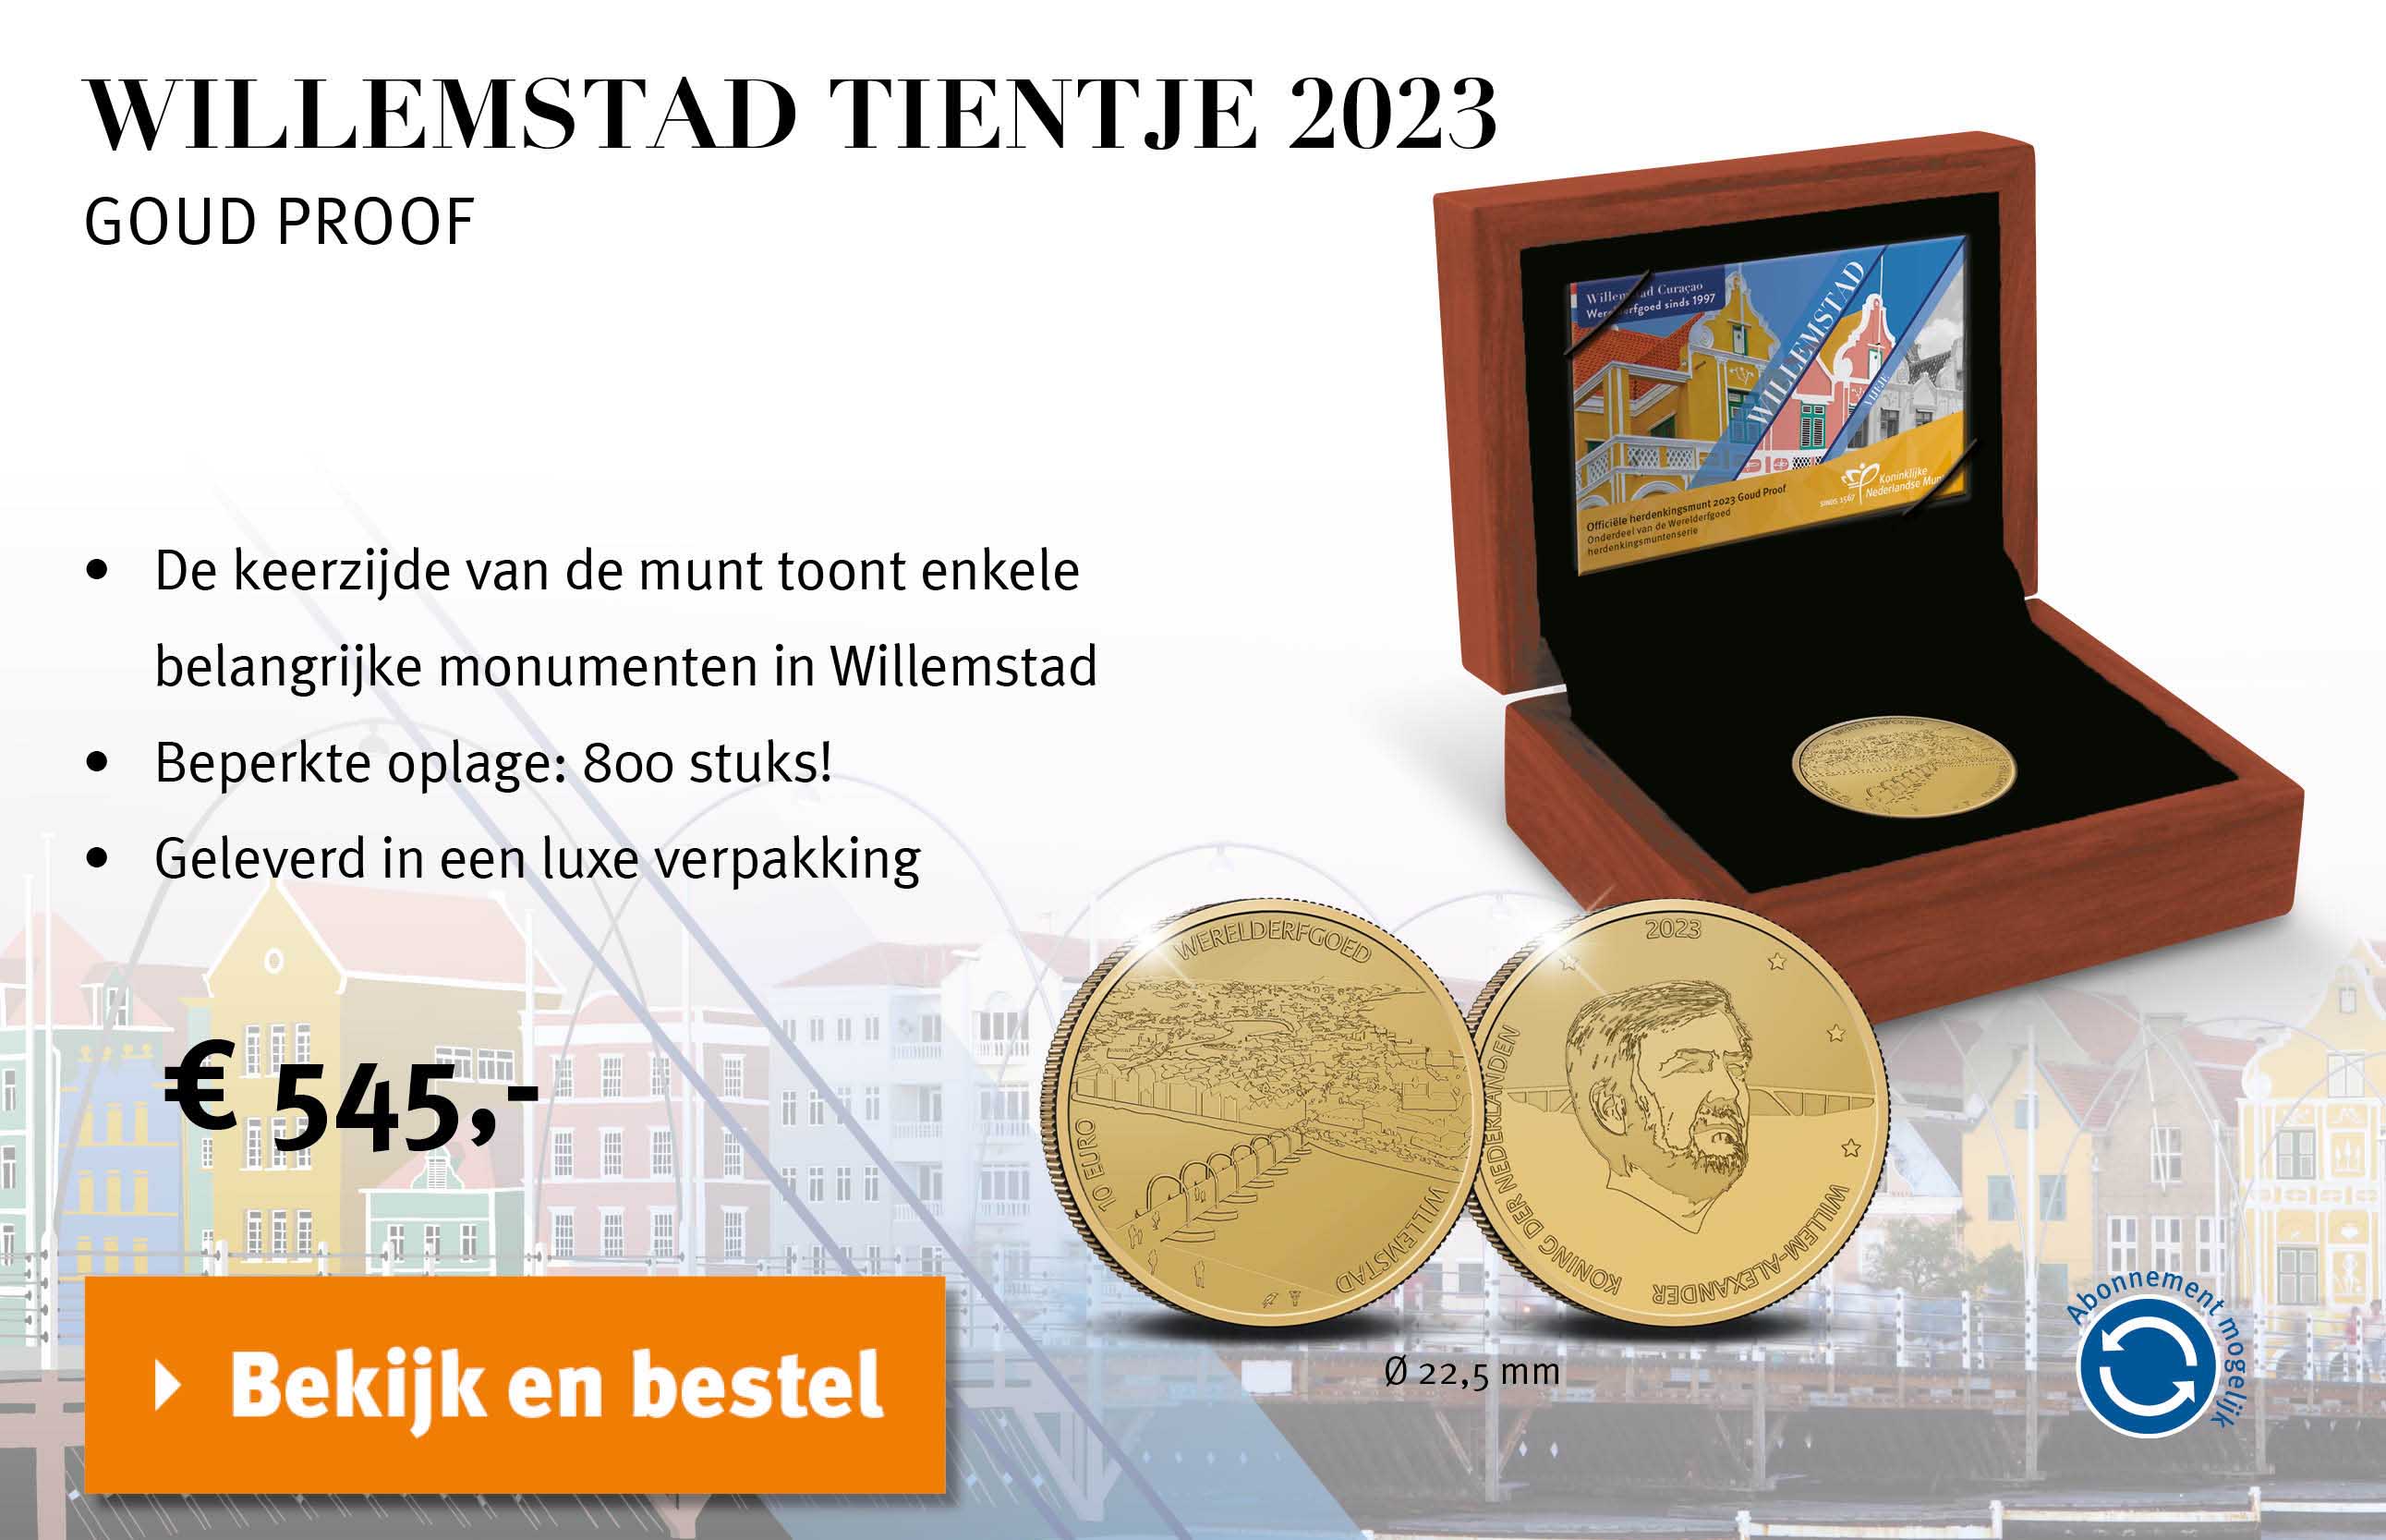 Bekijk en bestel: Willemstad Tientje Goud Proof 2023